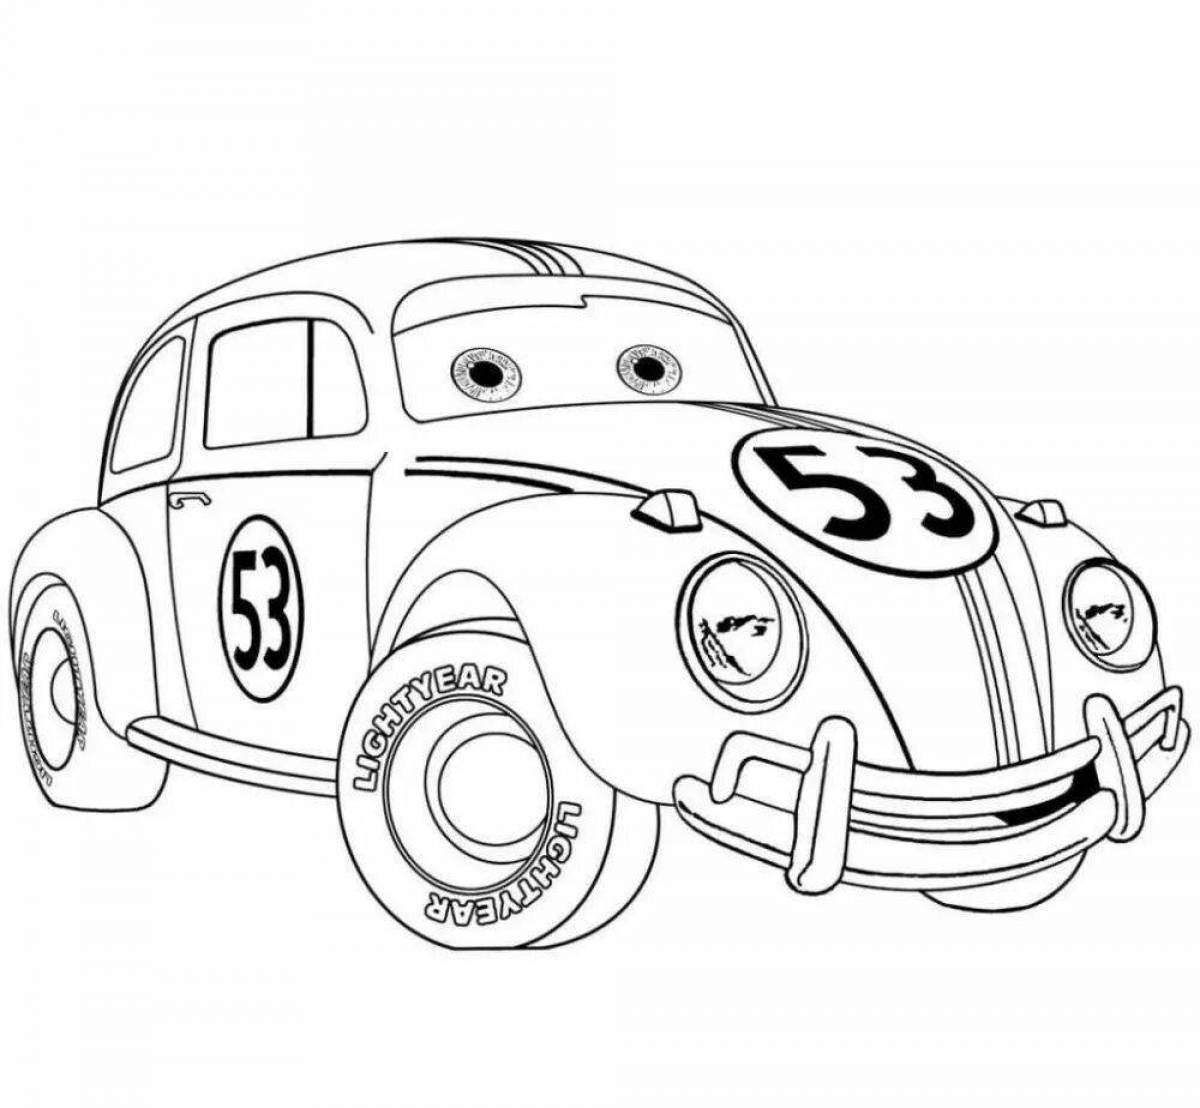 Cute cartoon cars coloring book